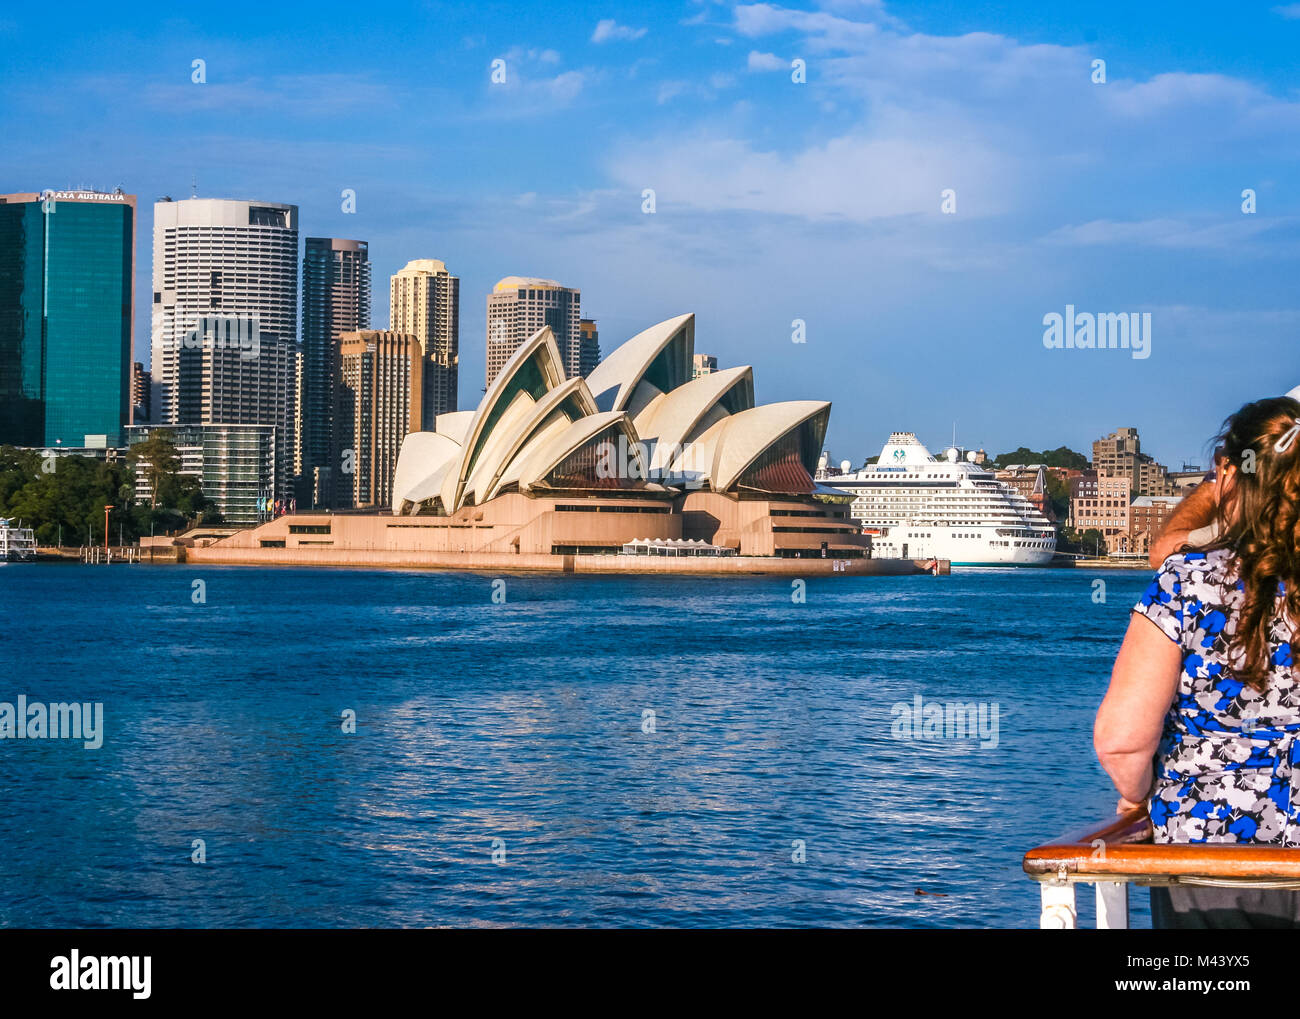 Gruppe von Touristen genießen einen schönen Blick auf Sydney, Australien, Skyline vom Boot an einem klaren Tag; berühmten Sydney Opera House im Zentrum Stockfoto